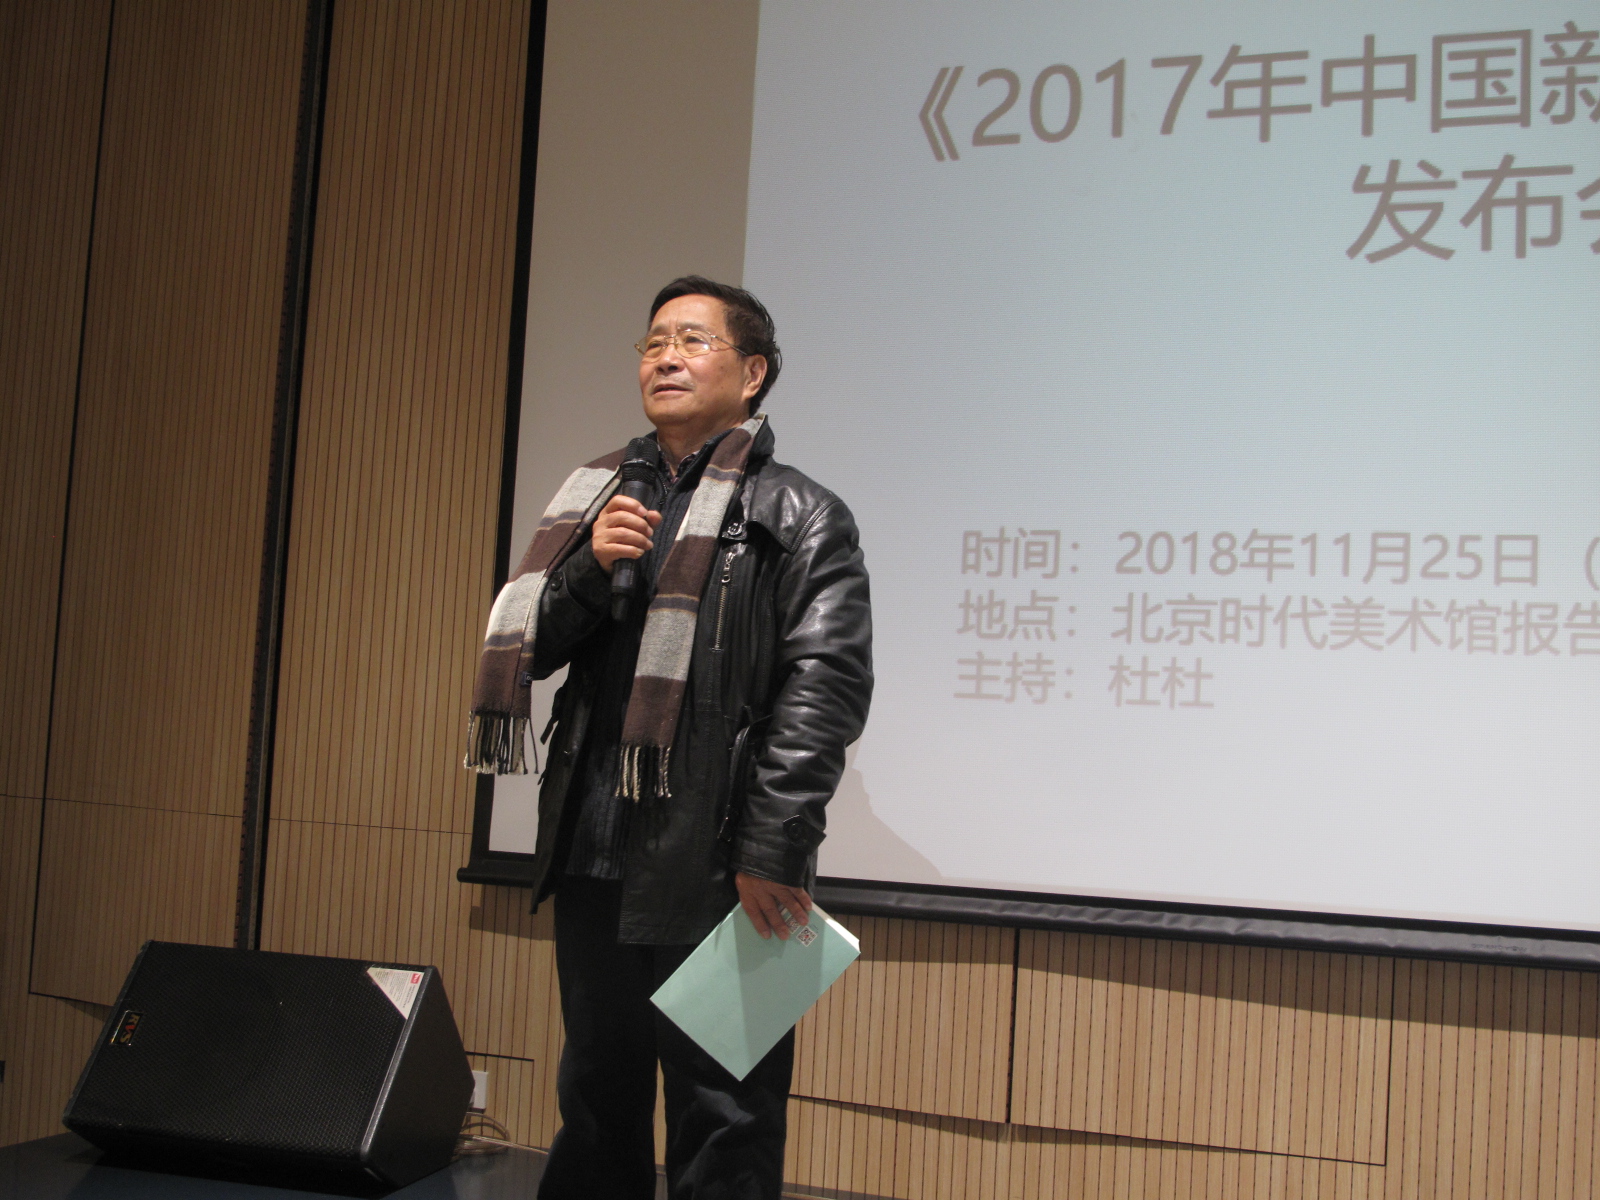 4、中国诗歌学会副会长曾凡华在发言.JPG